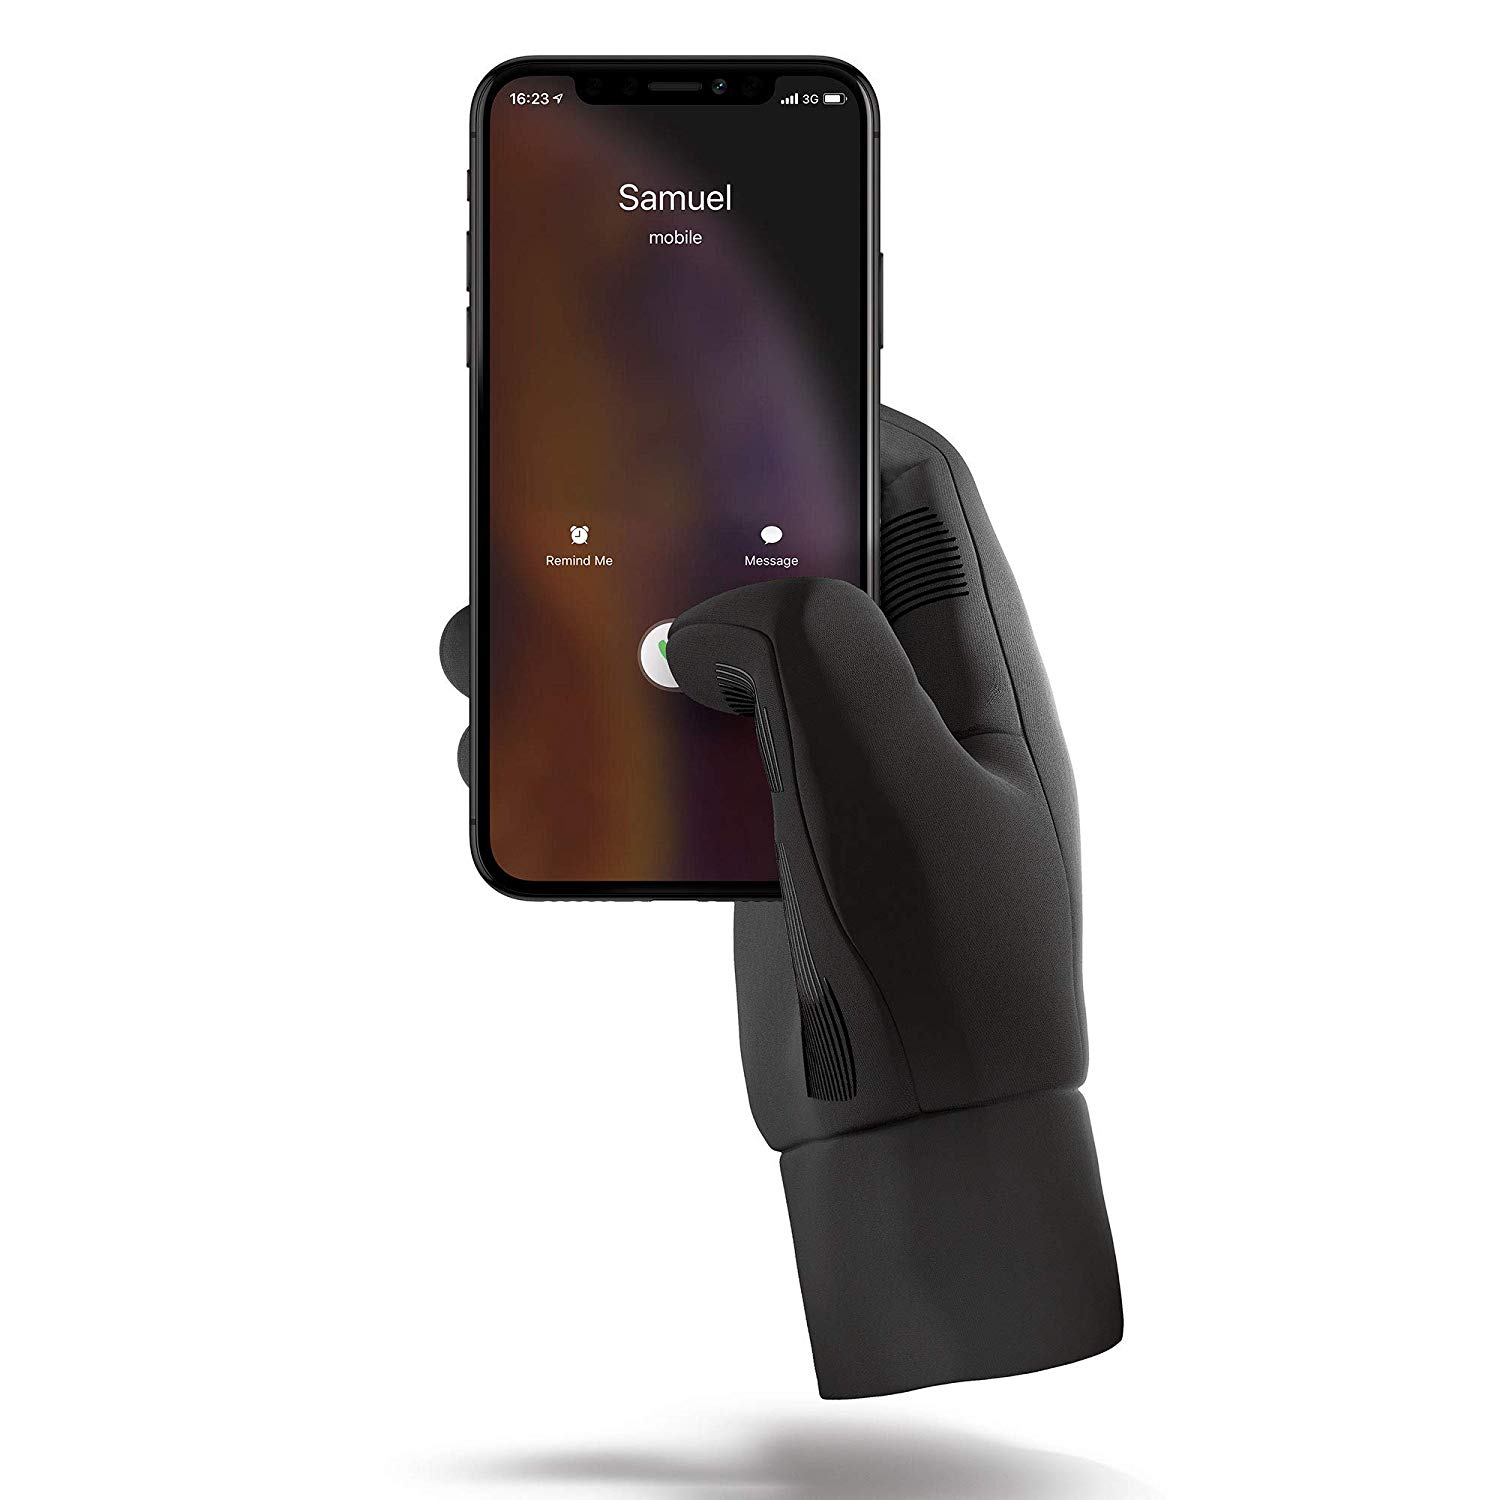 
                                    
                                Guanti touchscreen, mani al caldo e smartphone perfettamente funzionante